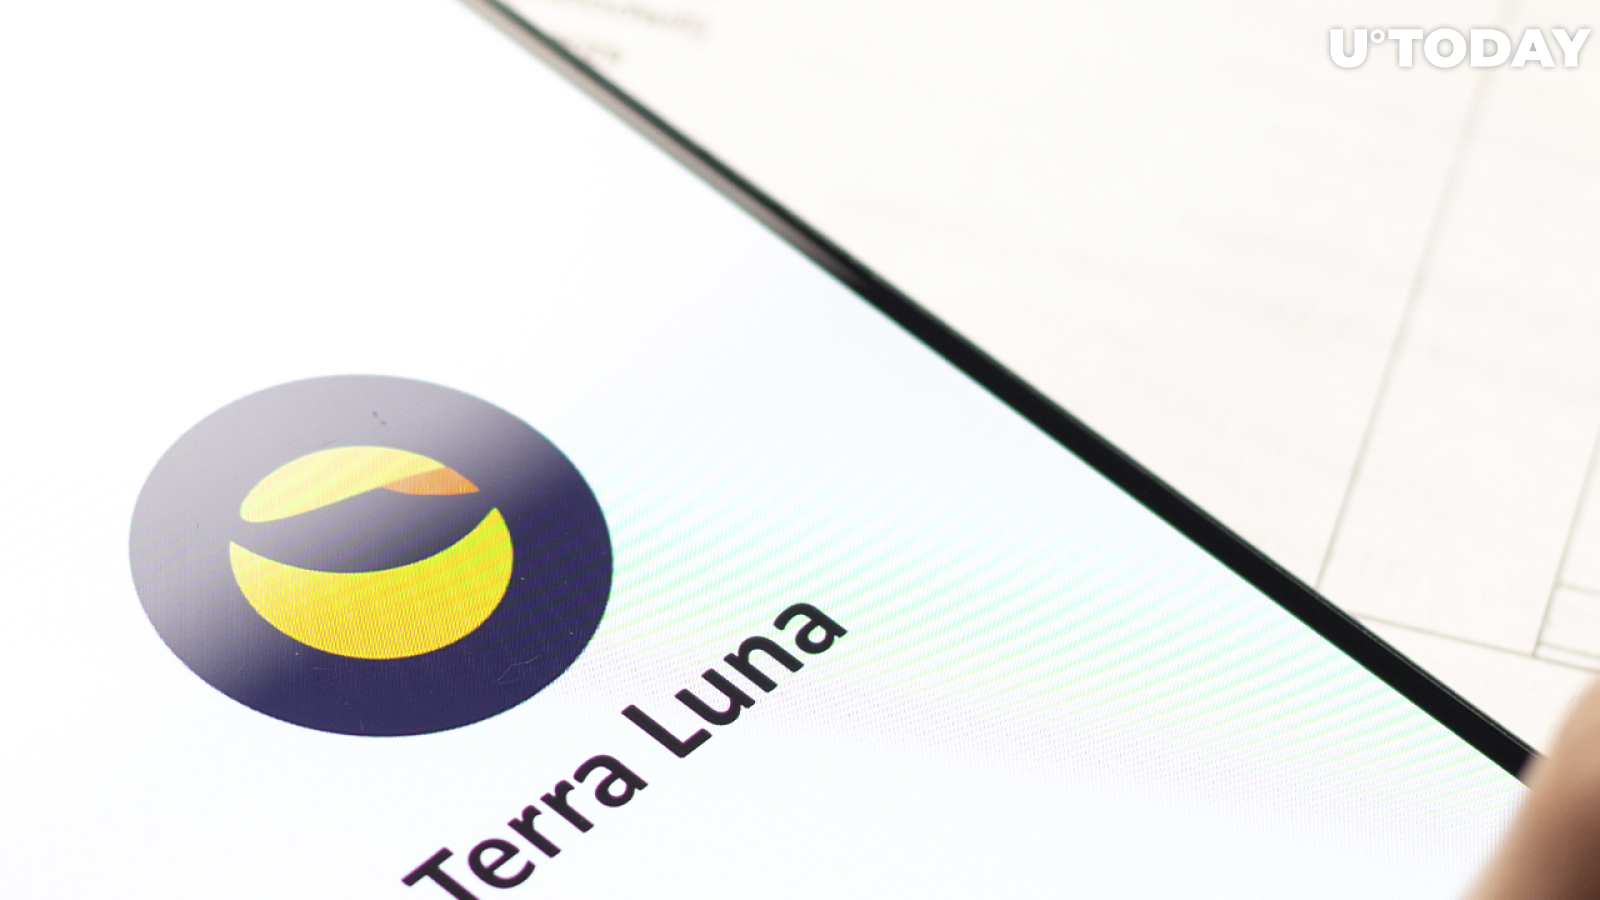 Ethereum Killer Terra (LUNA) Reaches Major Milestone in DeFi: Details